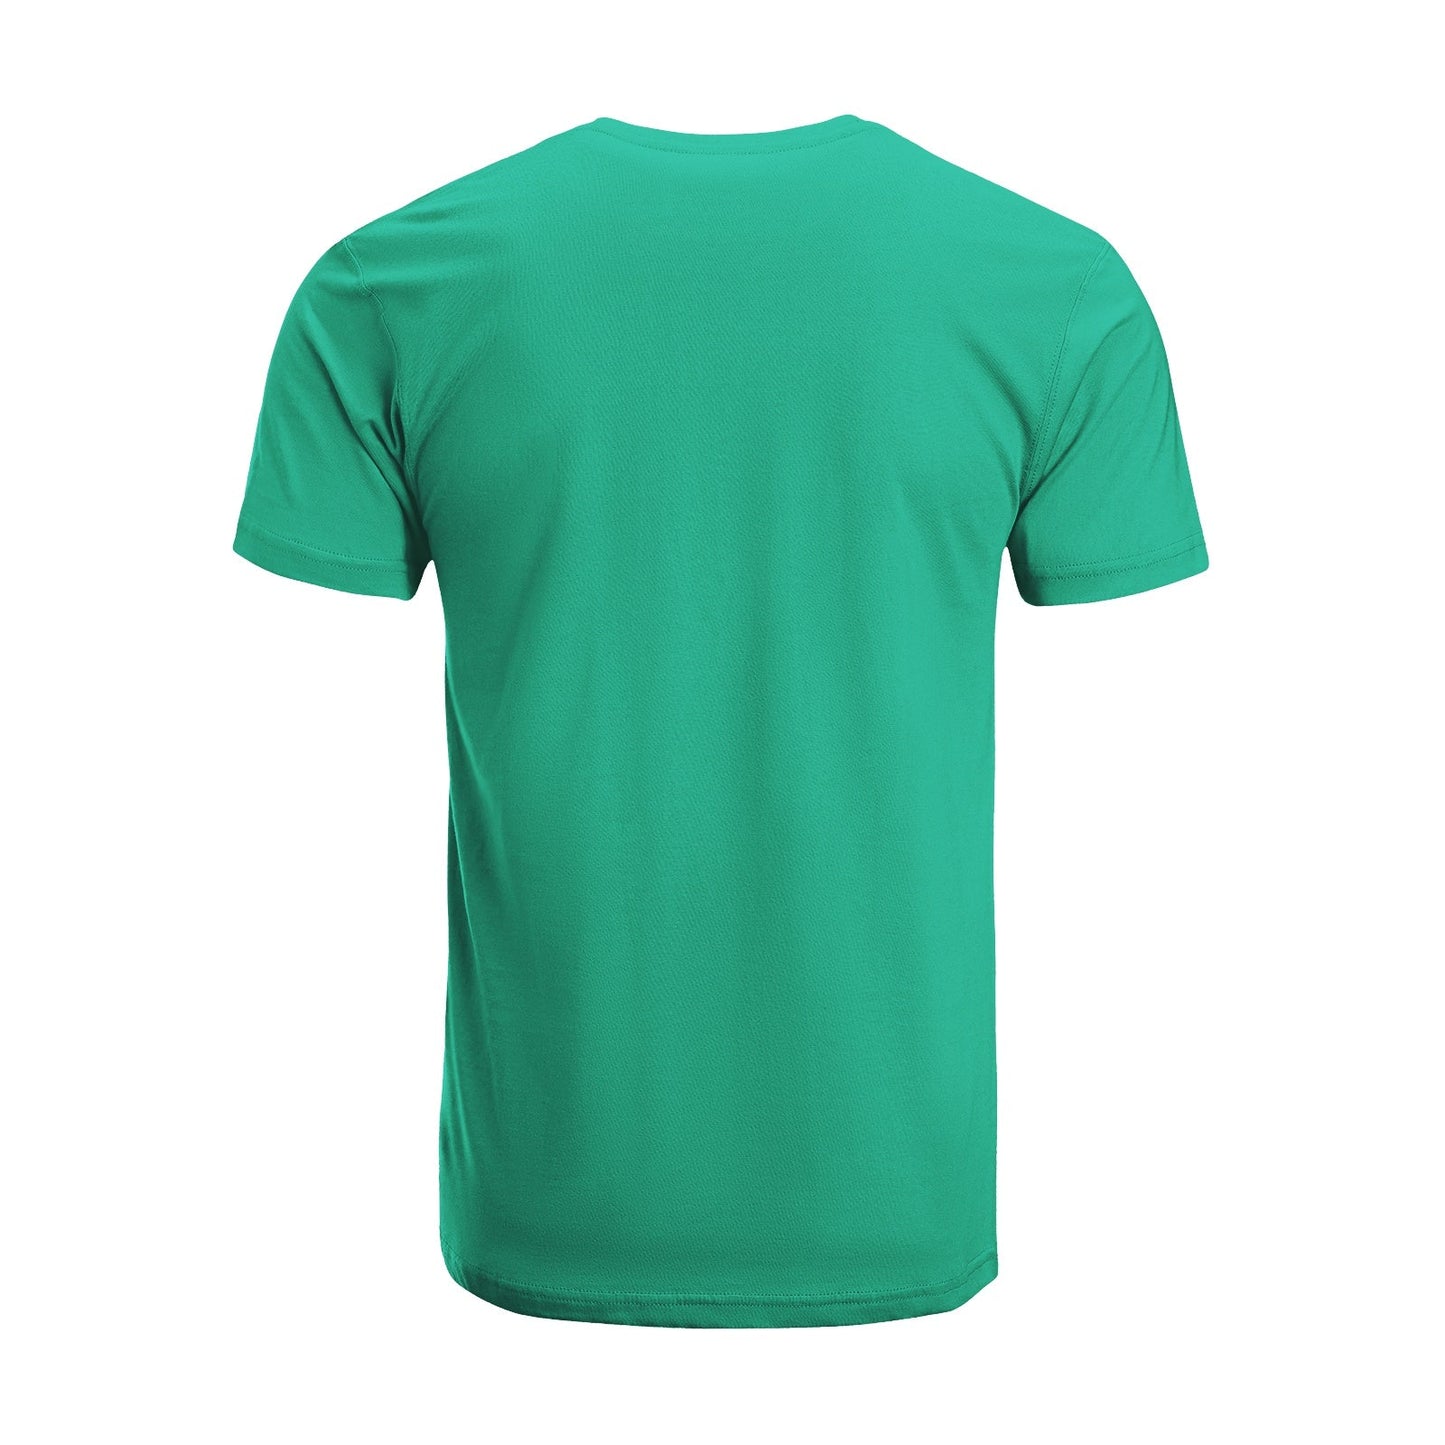 Unisex Short Sleeve Crew Neck Cotton Jersey T-Shirt TRUCK 41